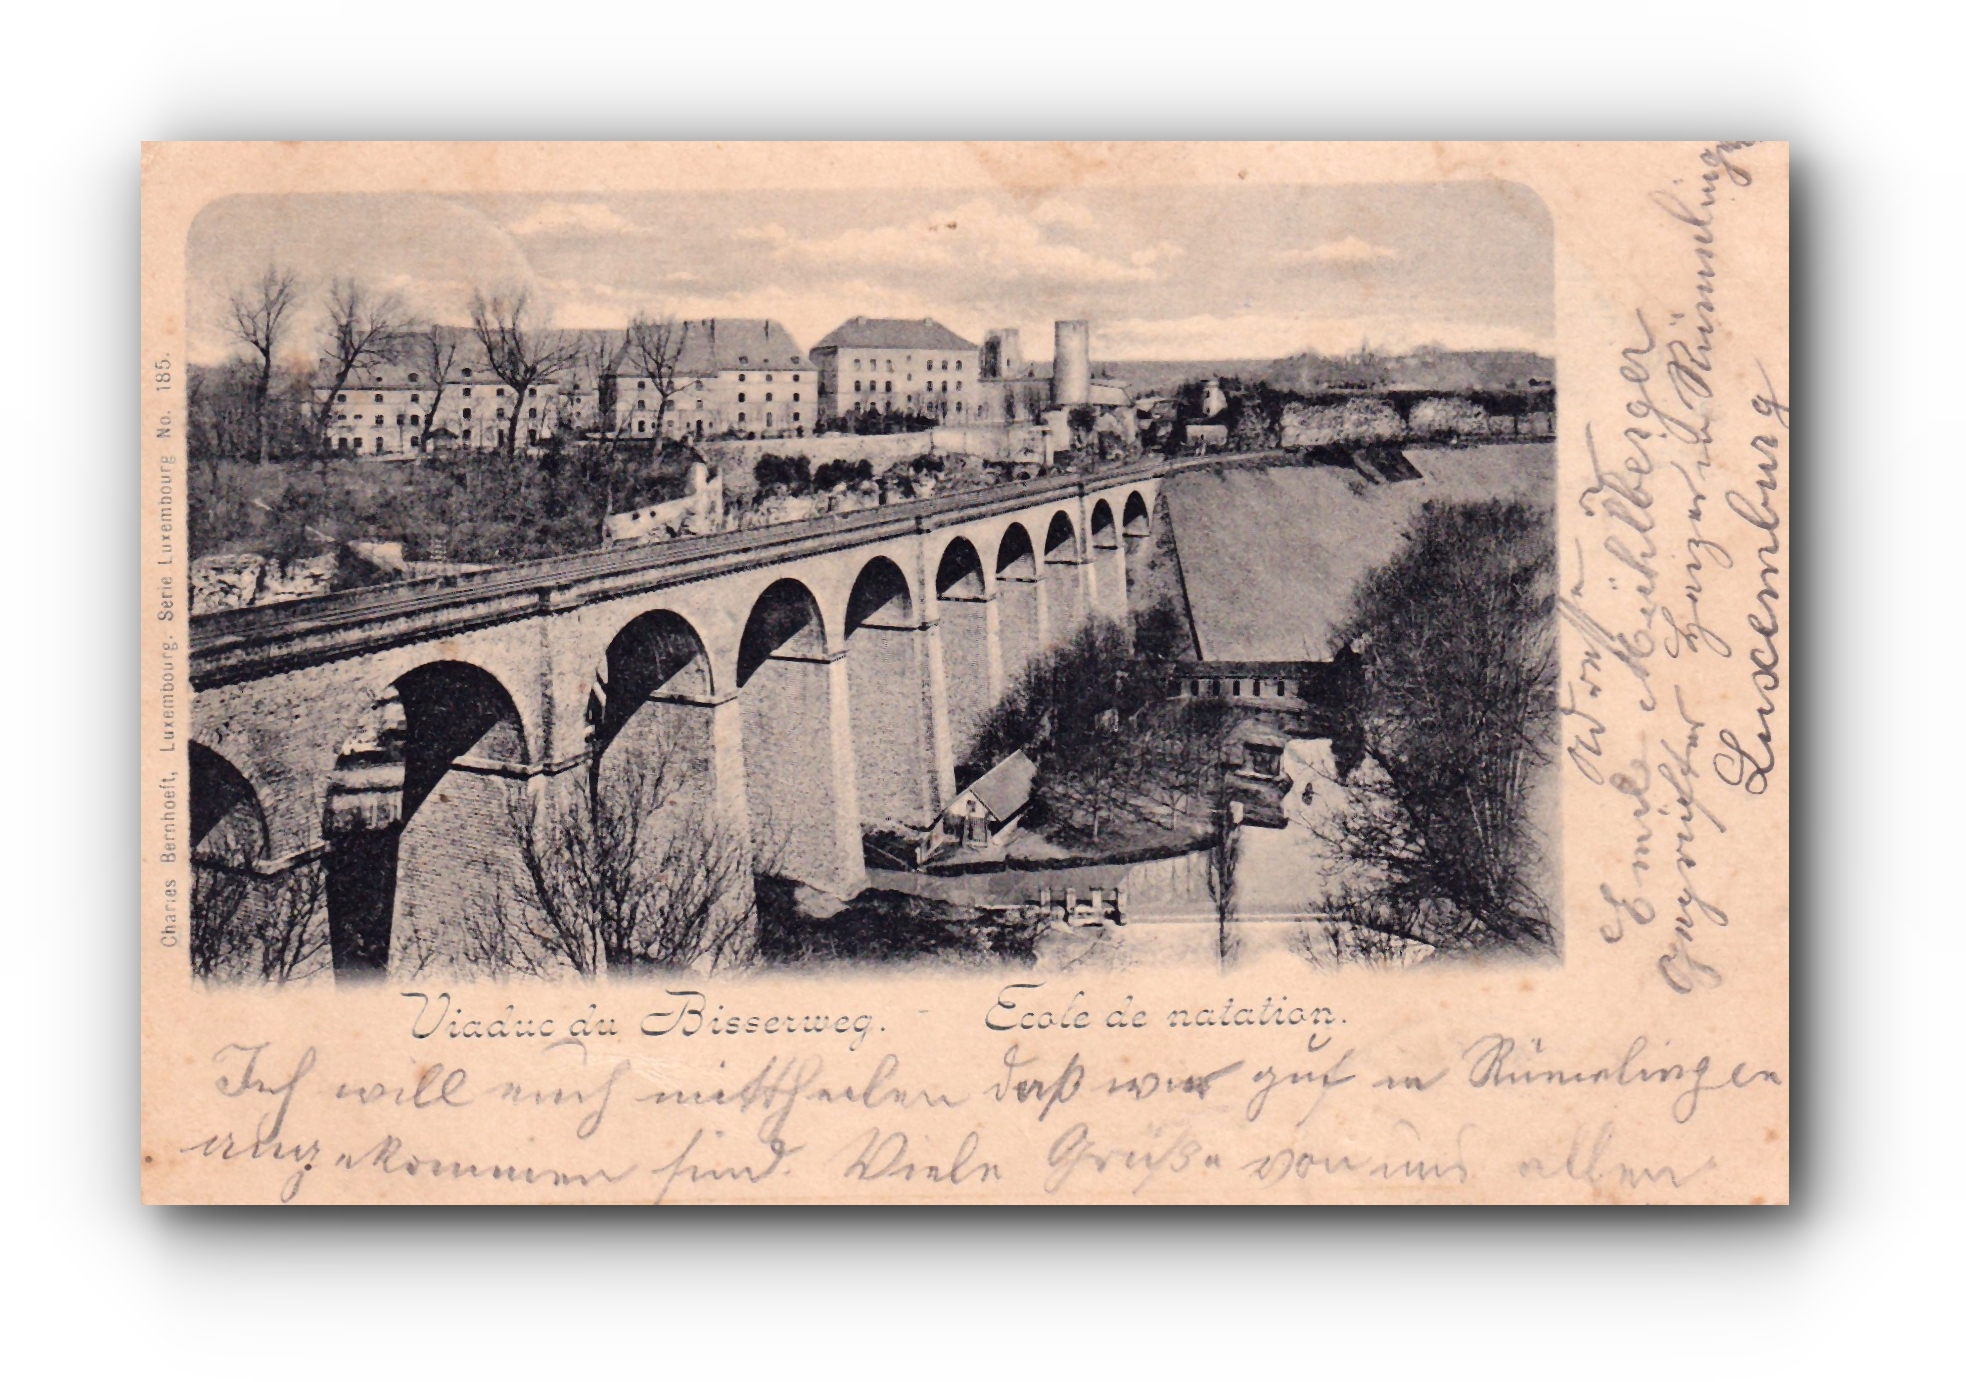 Viaduc du Bisserweg - Ecole de natation - 20.07.1906